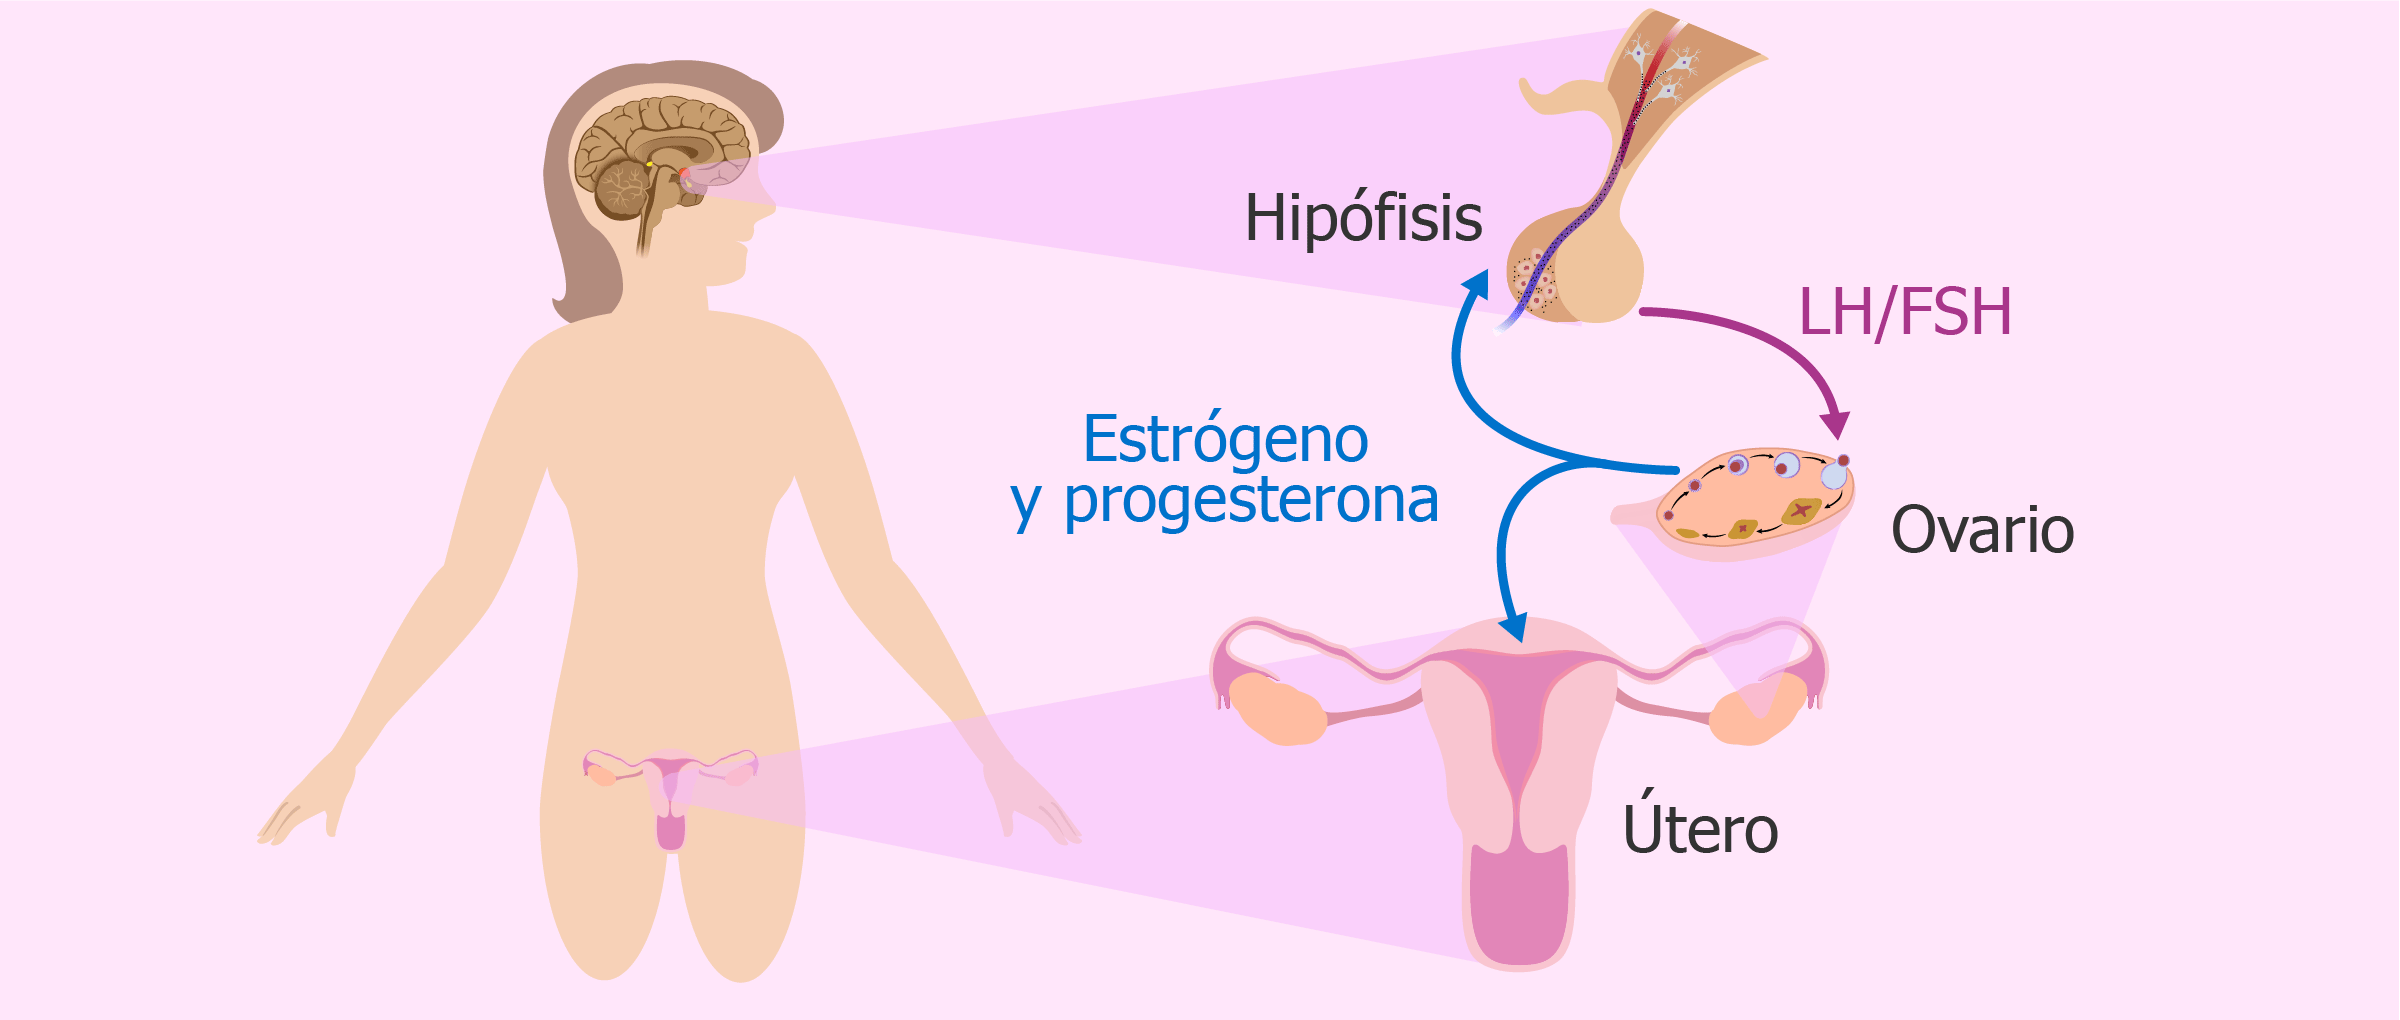 Androgenos altos en la mujer sintomas